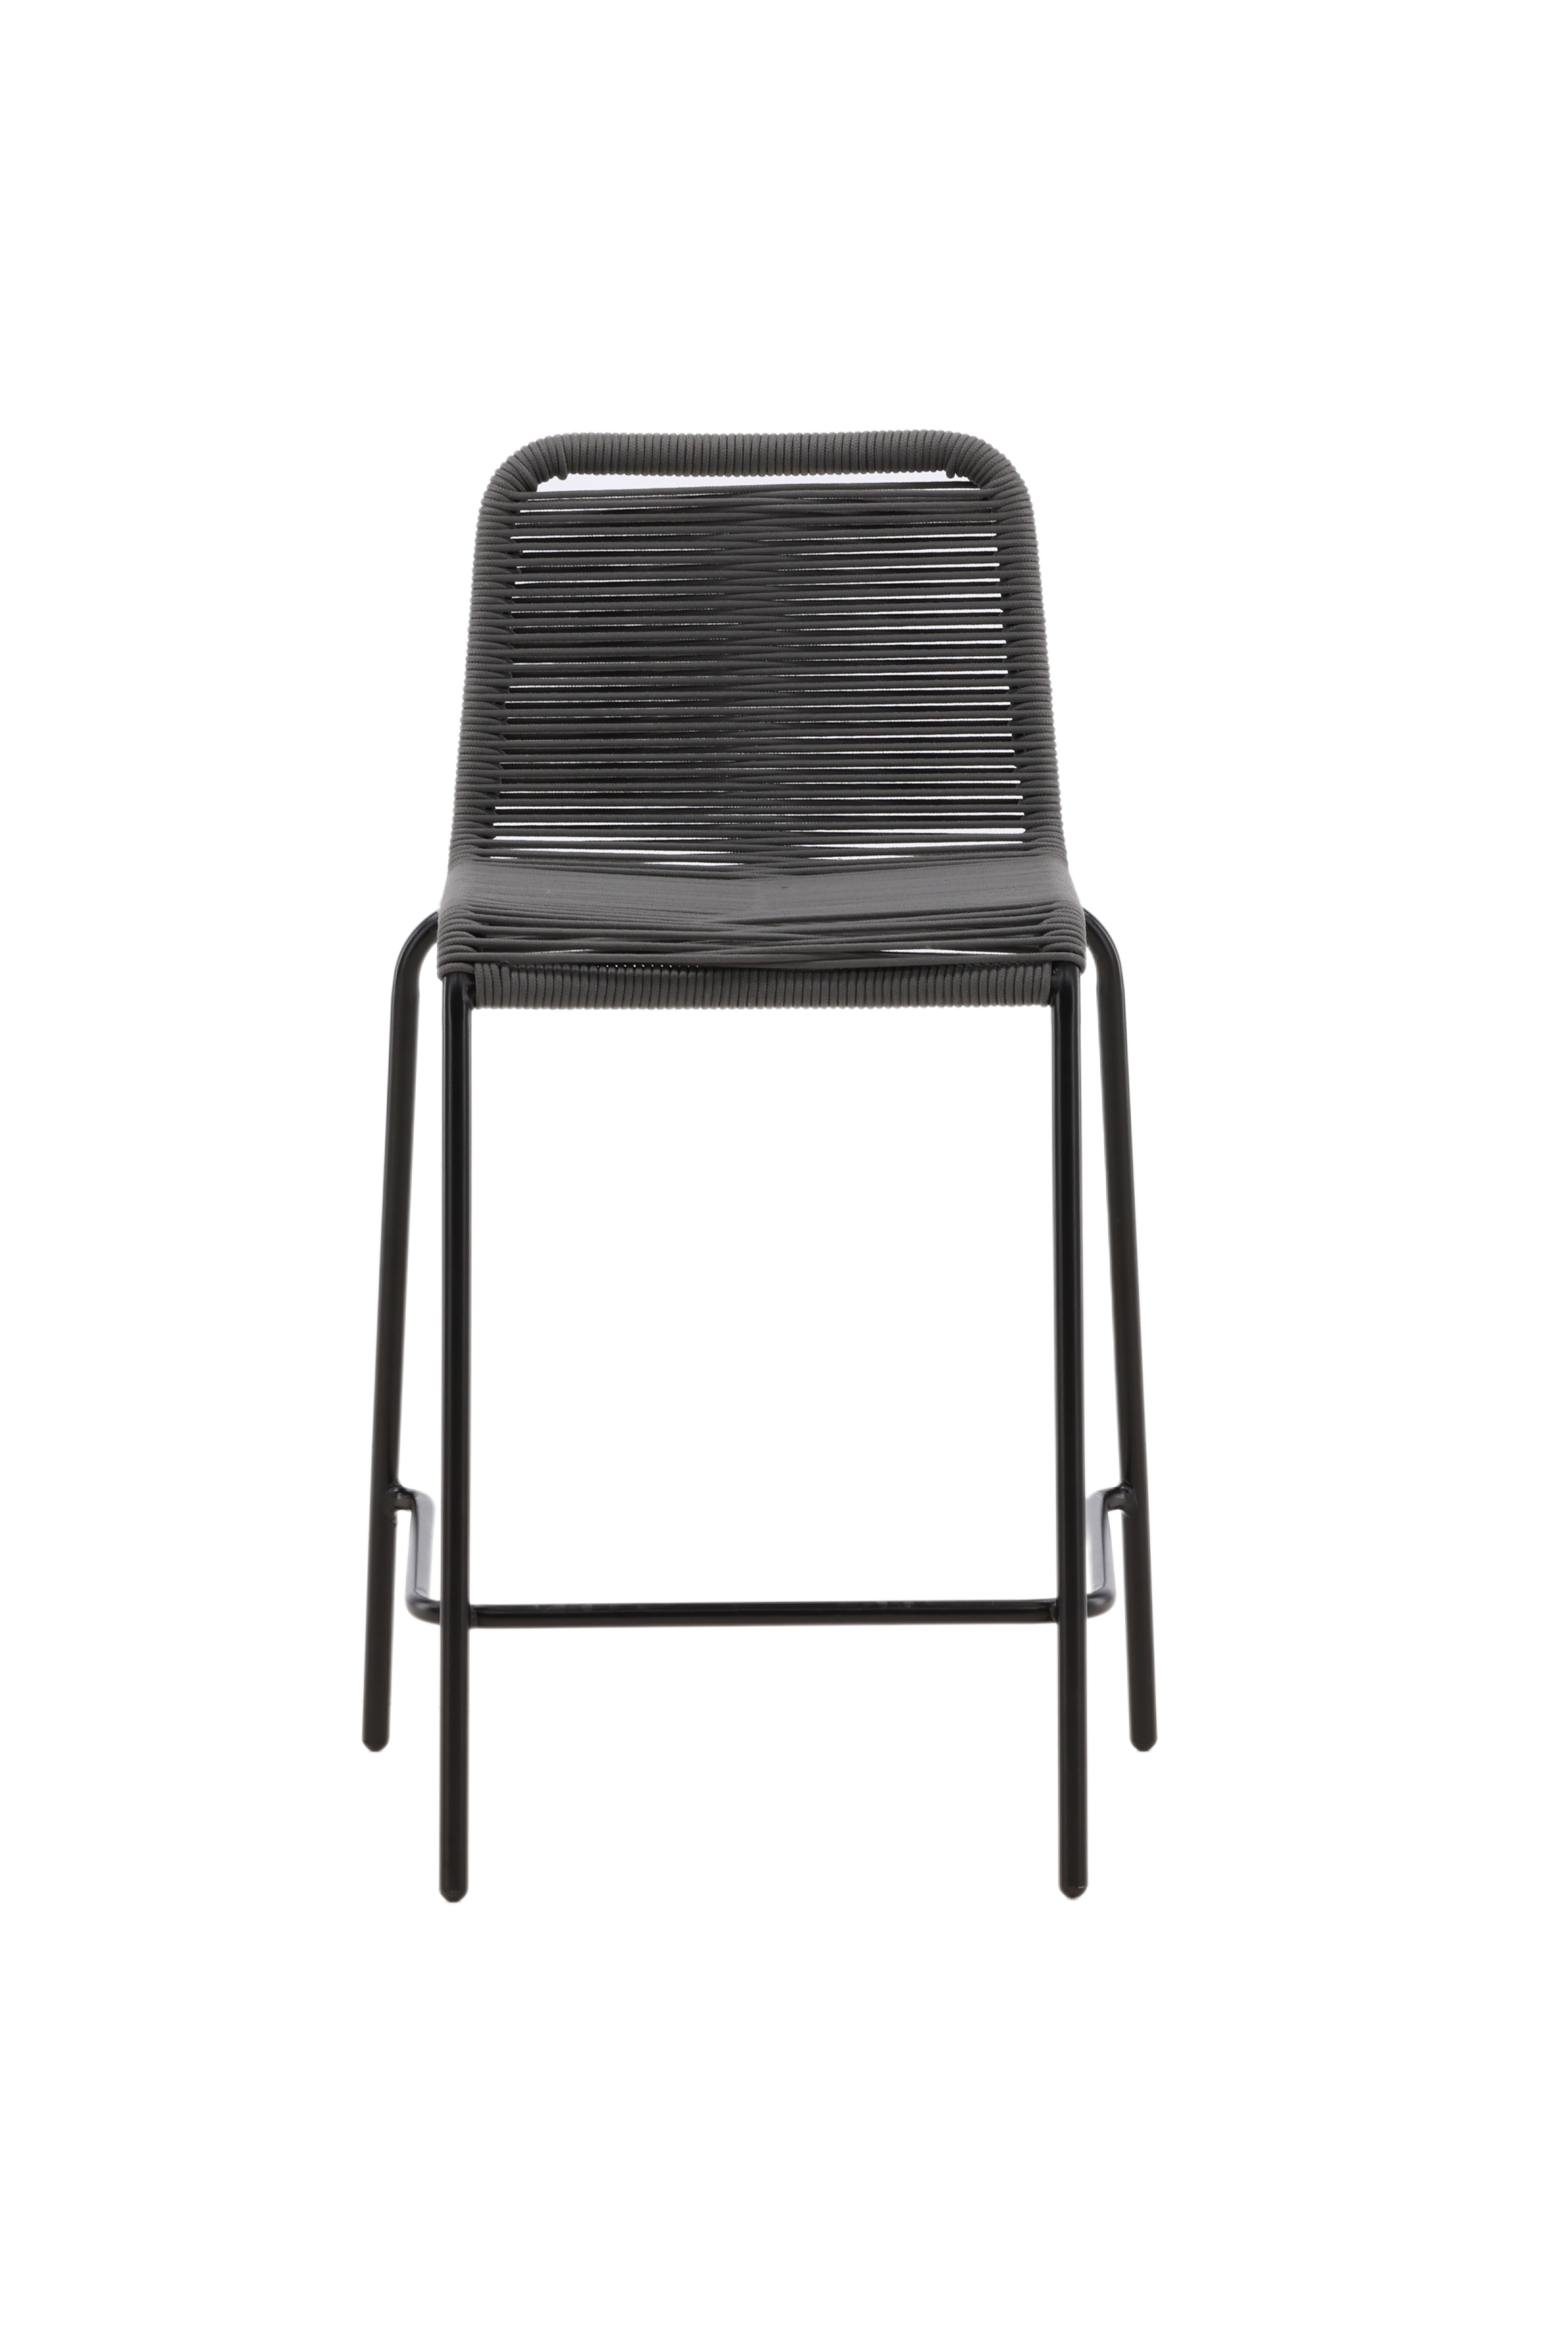 13: VENTURE DESIGN Lindos udendørs barstol, m. ryglæn og fodstøtte - mørkegrå reb og sort stål